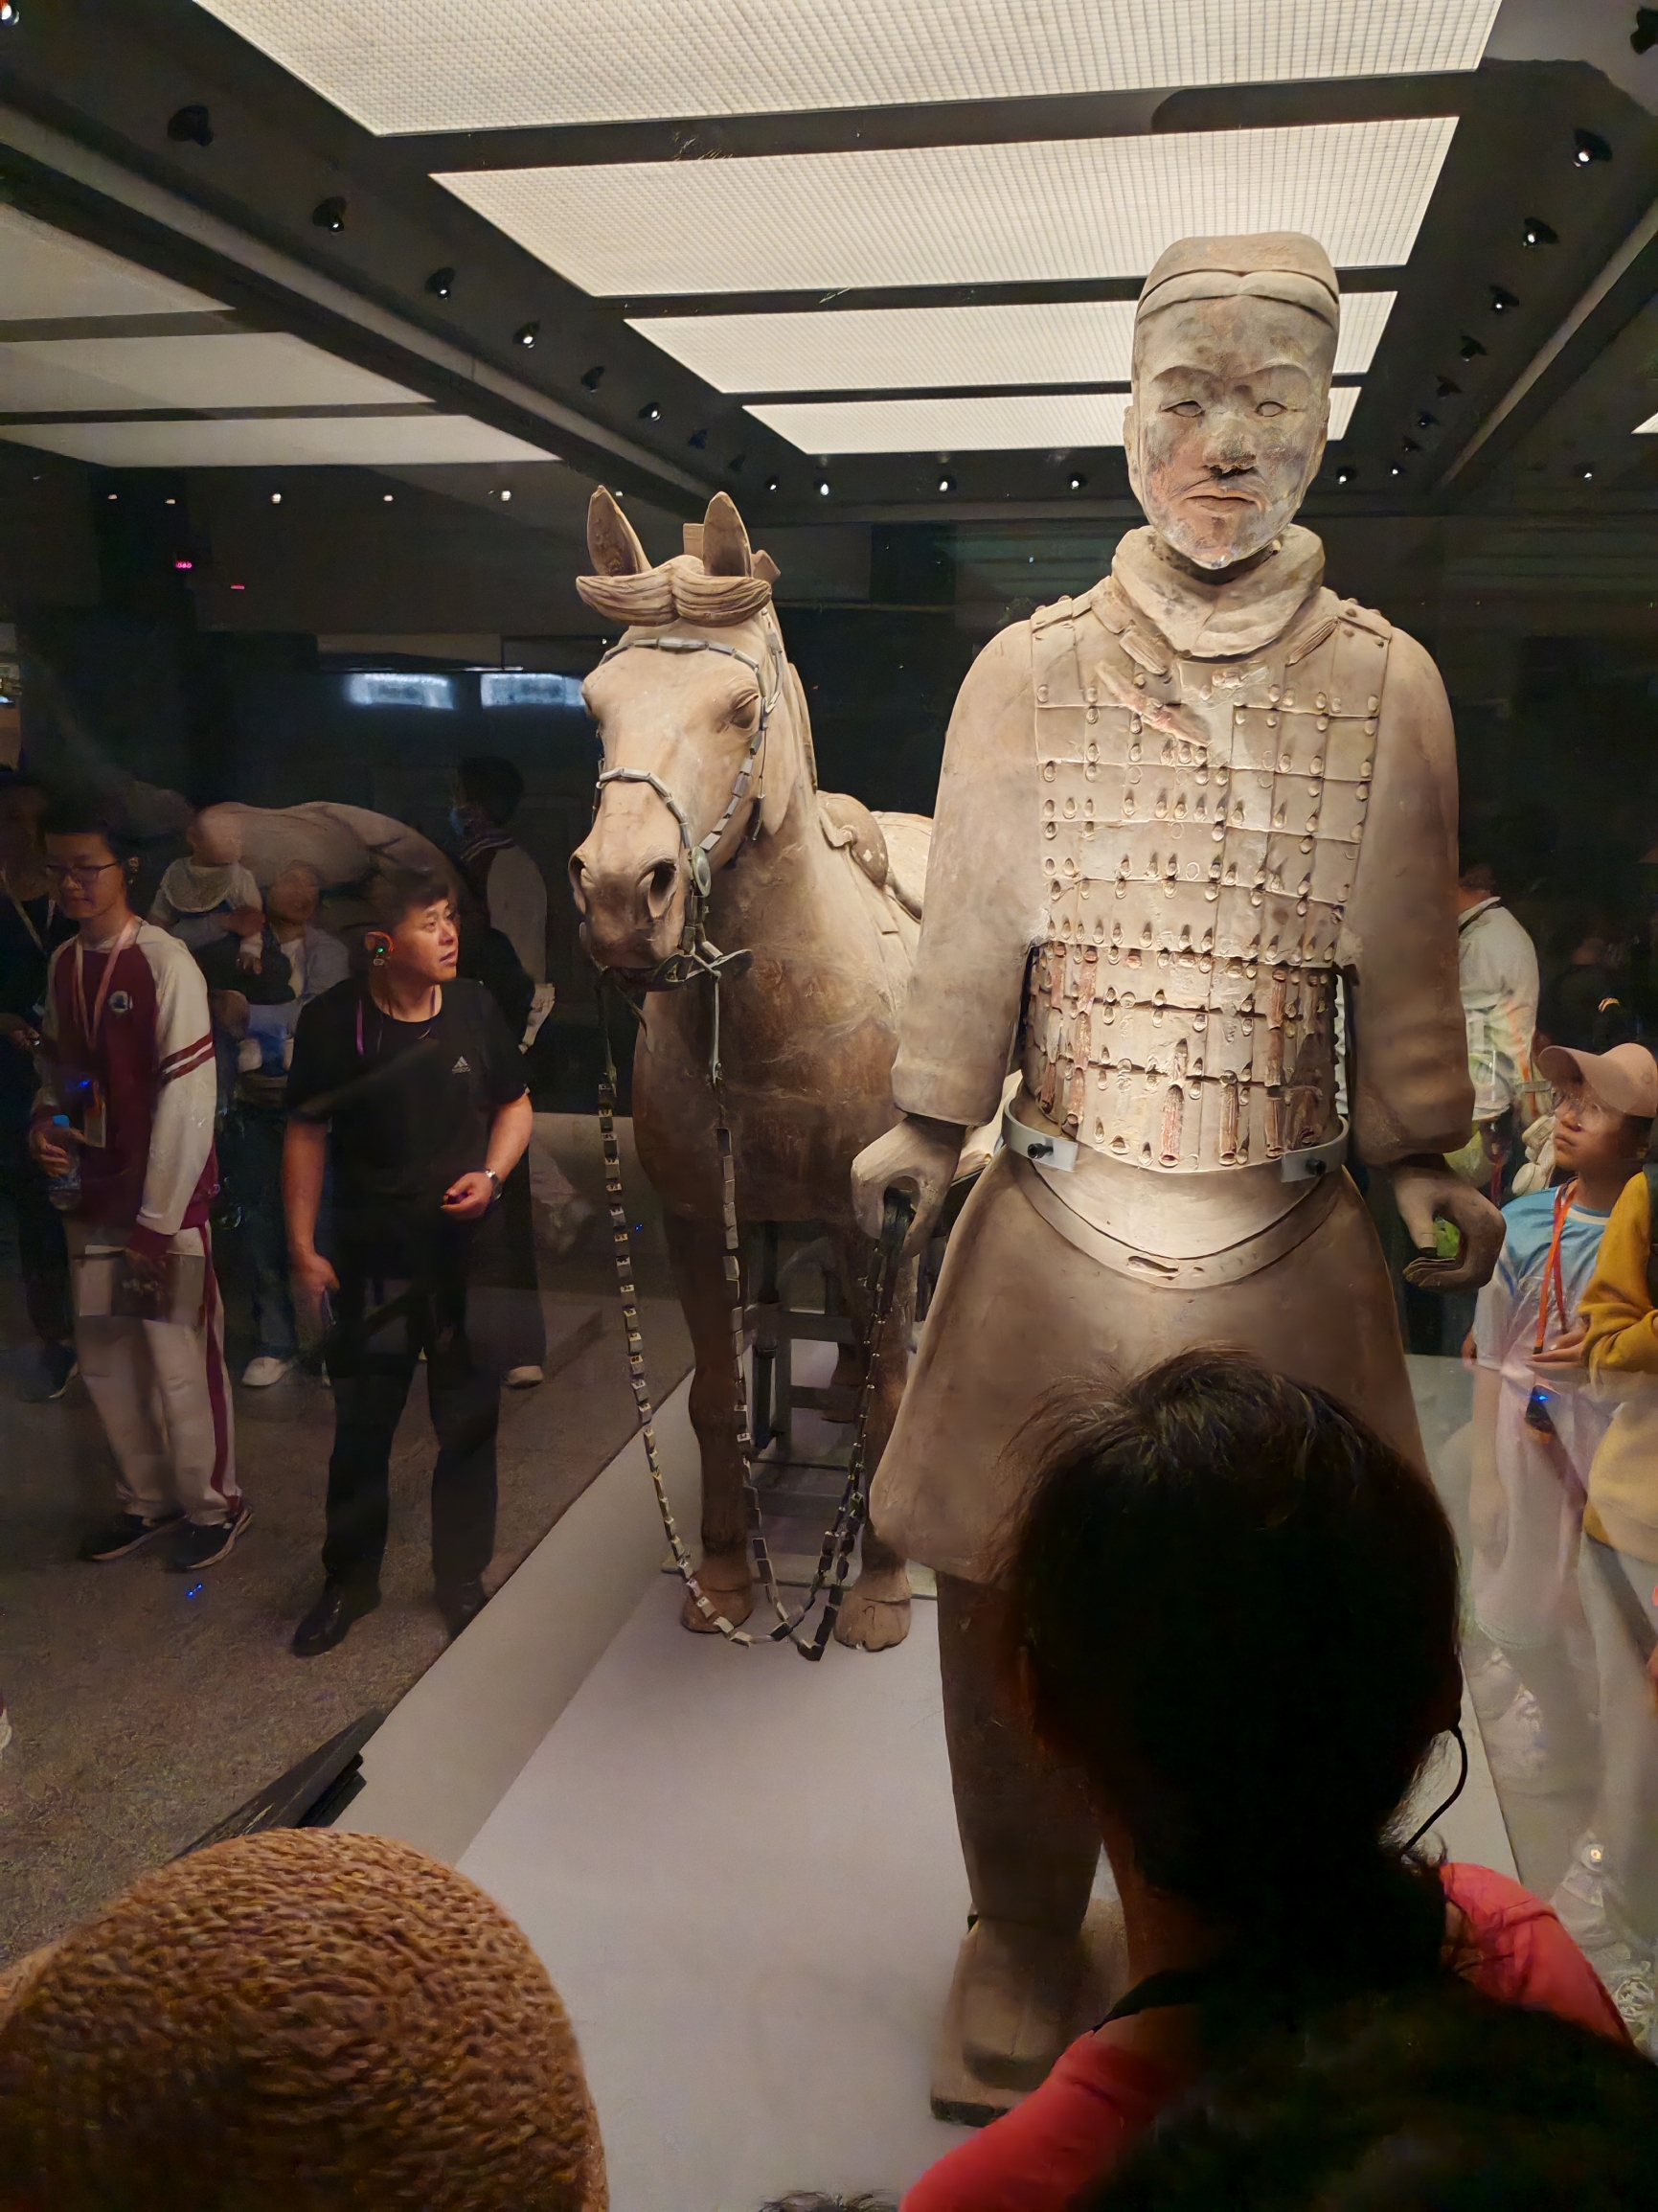 兵马俑参观受益匪浅，让我们更加深入了解中国历史。特别是娜娜老师的精彩讲解，让我们了解兵马俑背后的感人